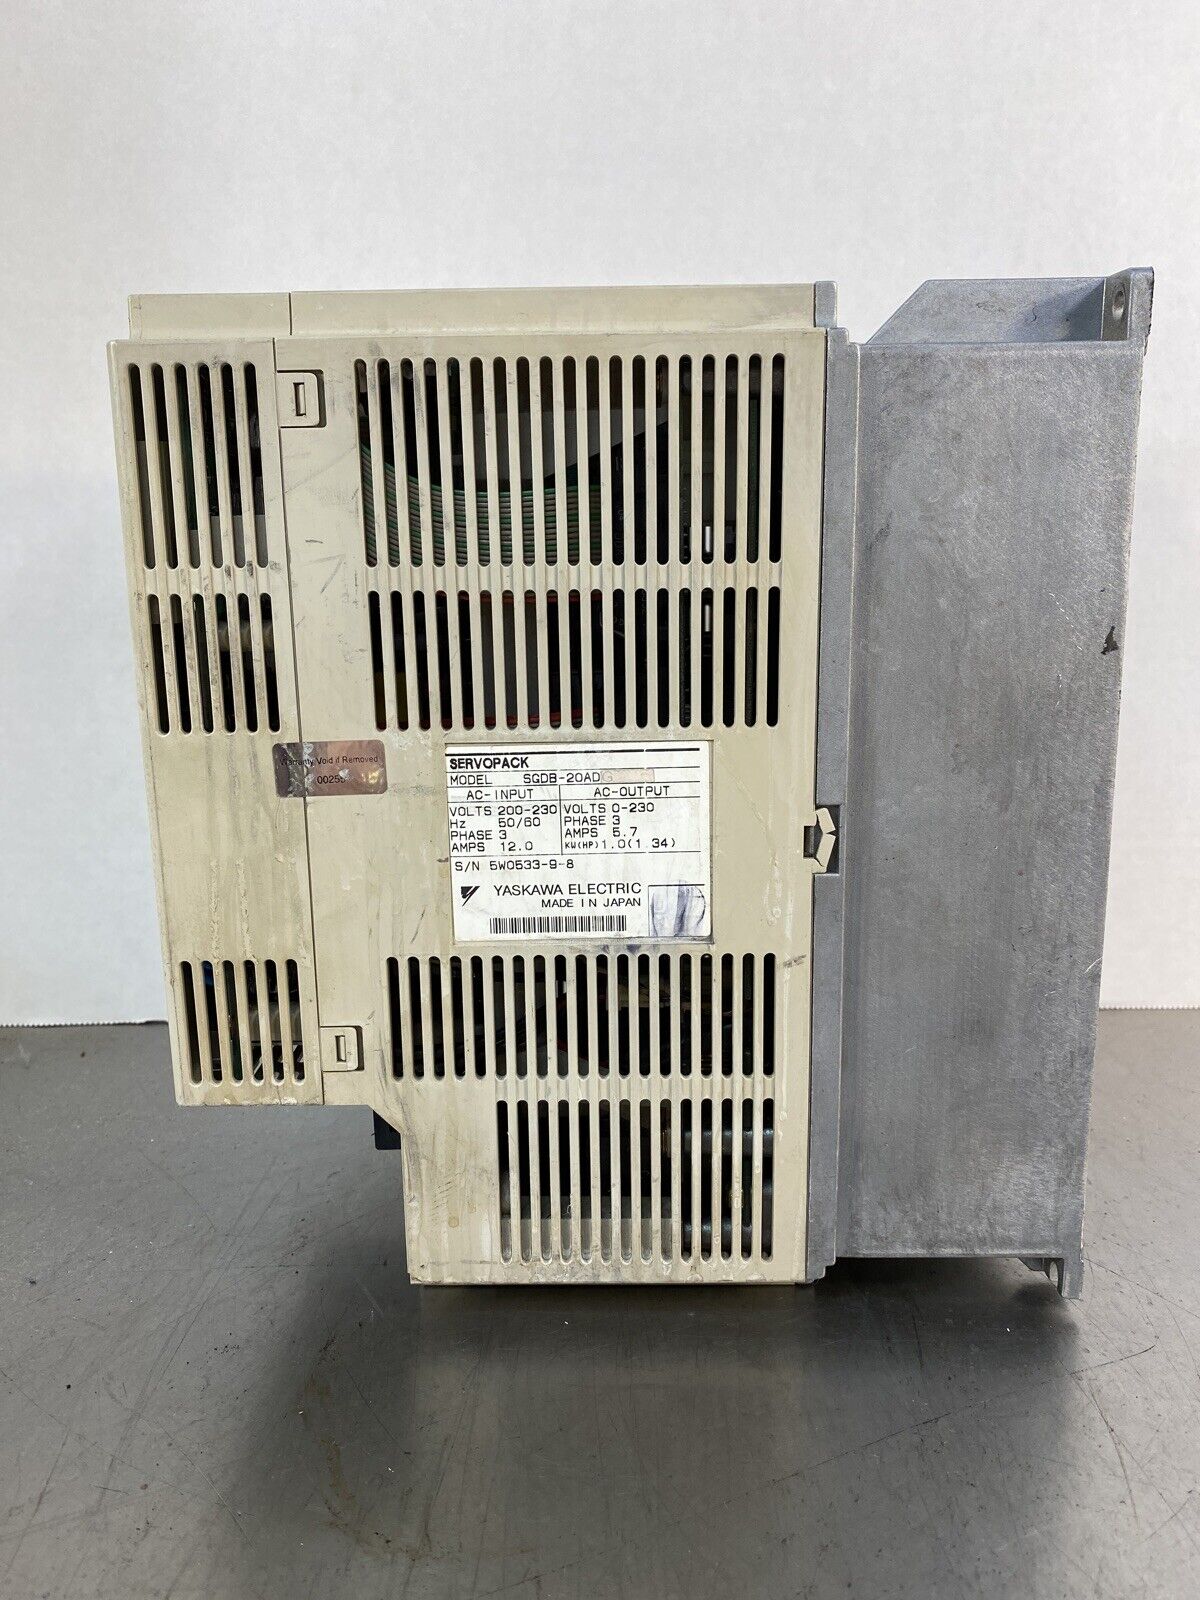 Yaskawa Electric - ServoPack - Model: SGDB-20ADG                              1F